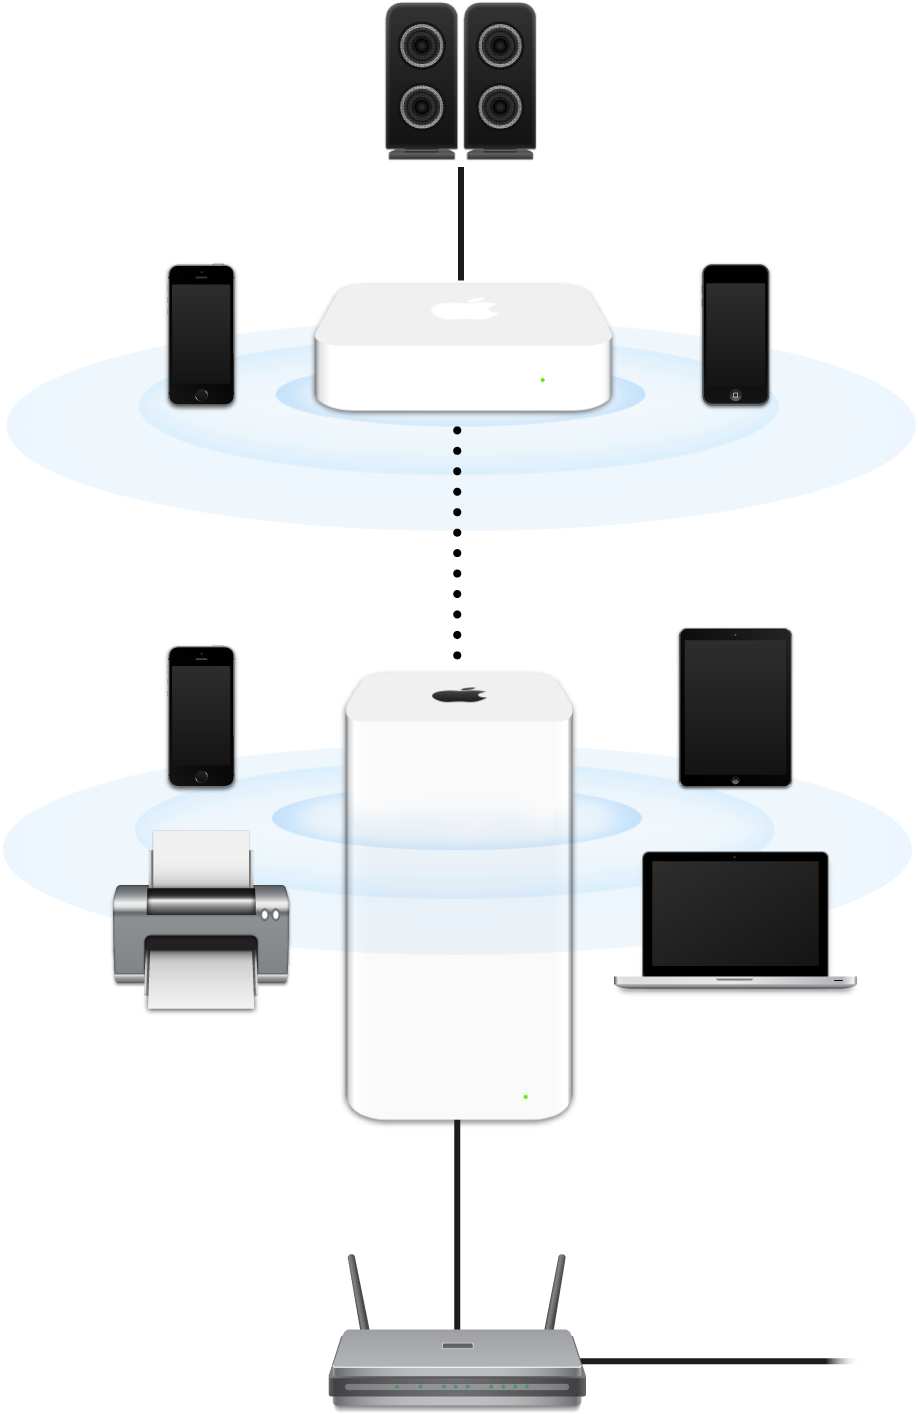 AirMac ExtremeとAirMac Expressを含む拡張ネットワーク。モデムに接続され、さまざまなデバイスにデータを送信しています。